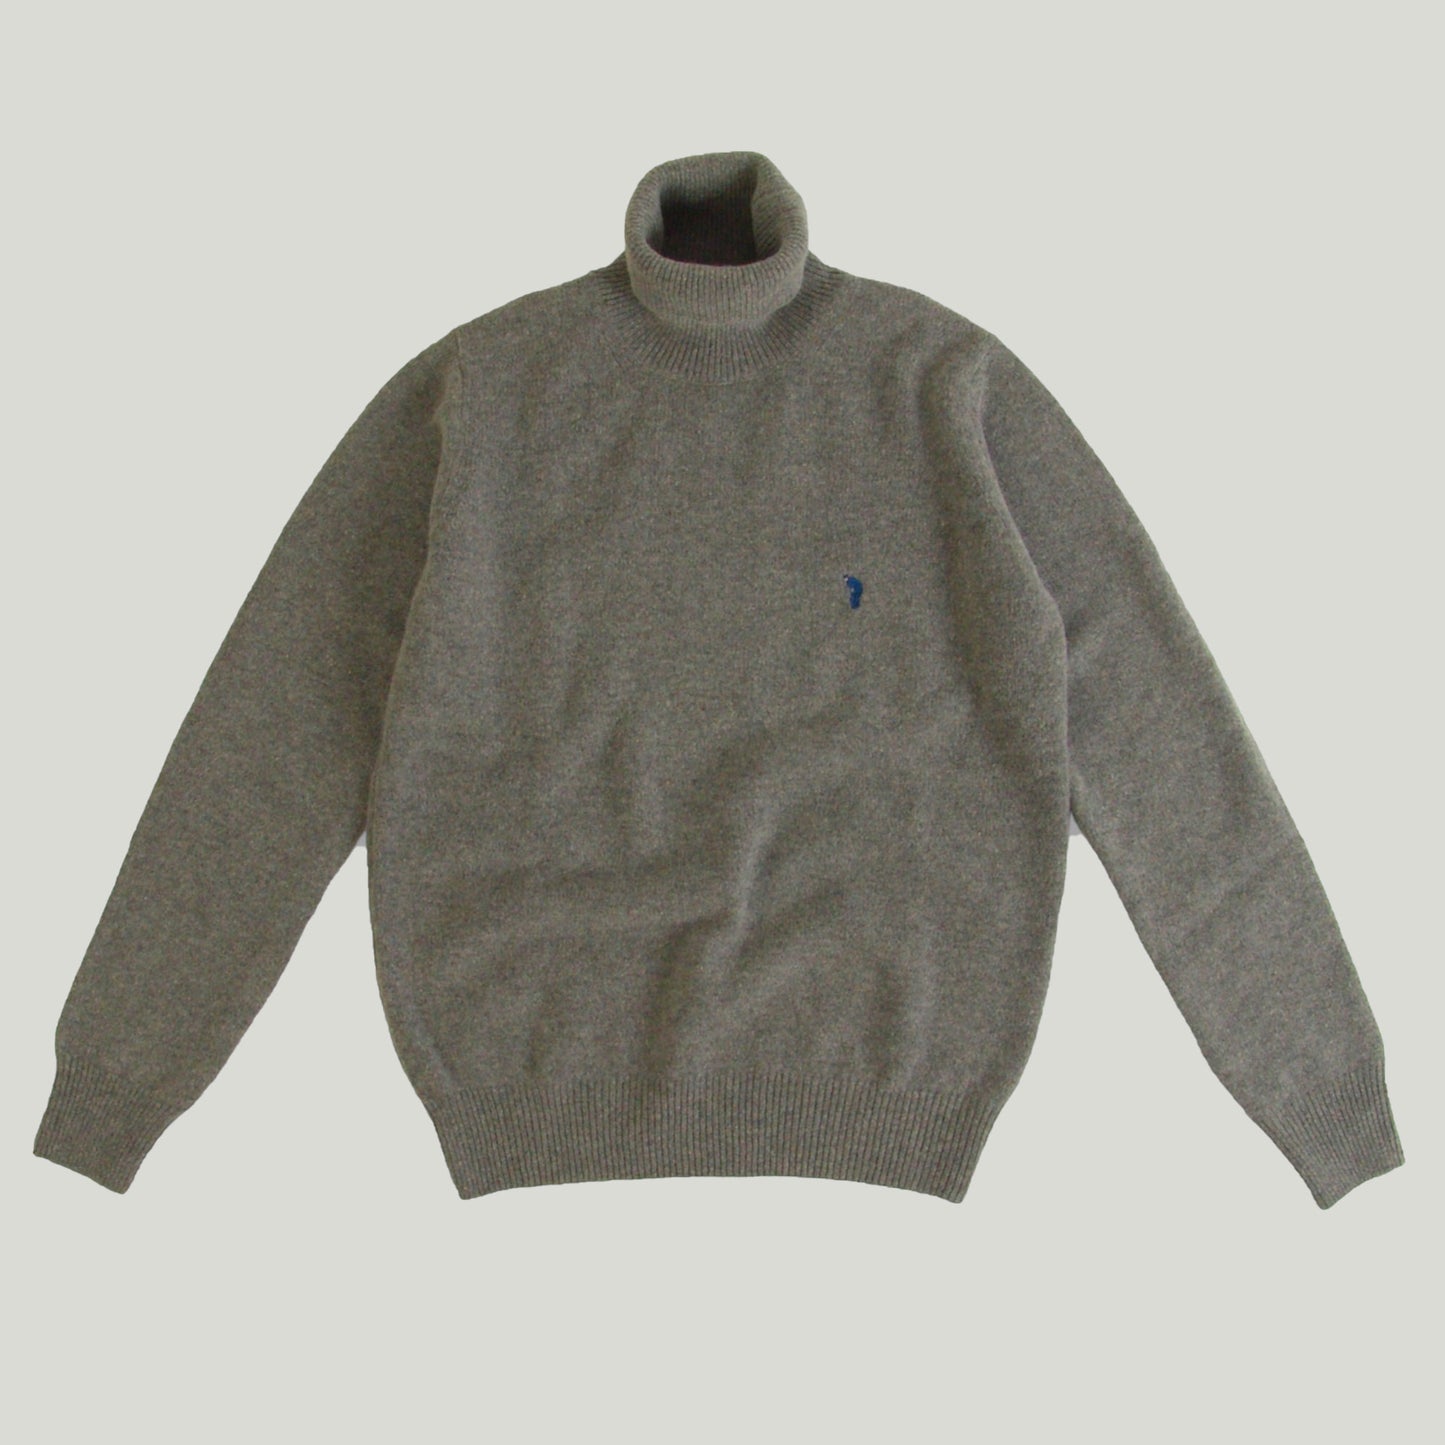 Men's Turtleneck Sweater in wool